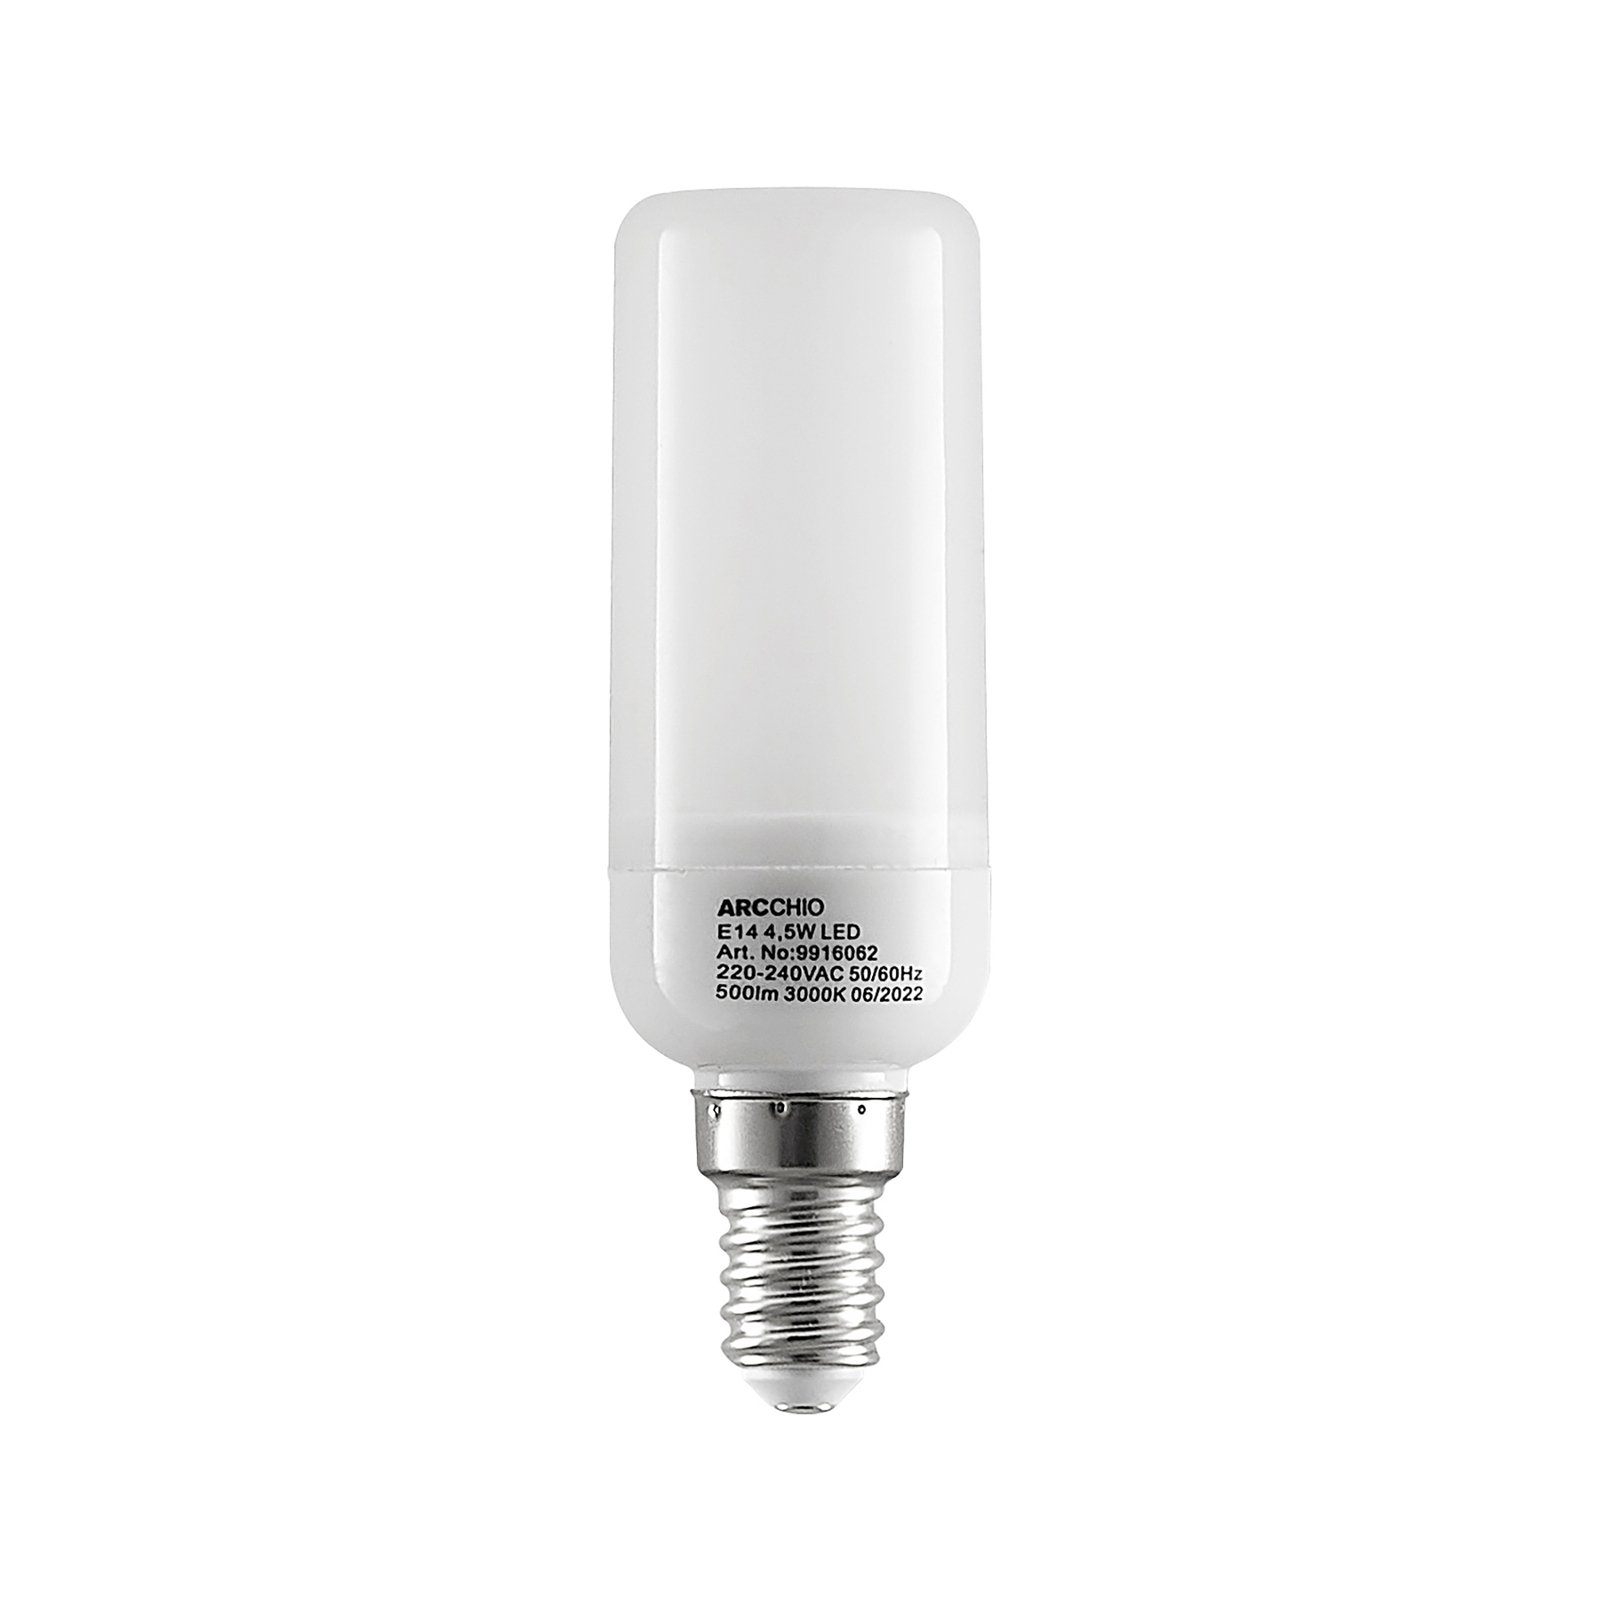 Arcchio LED tube bulb E14 4.5W 3,000K set of 4